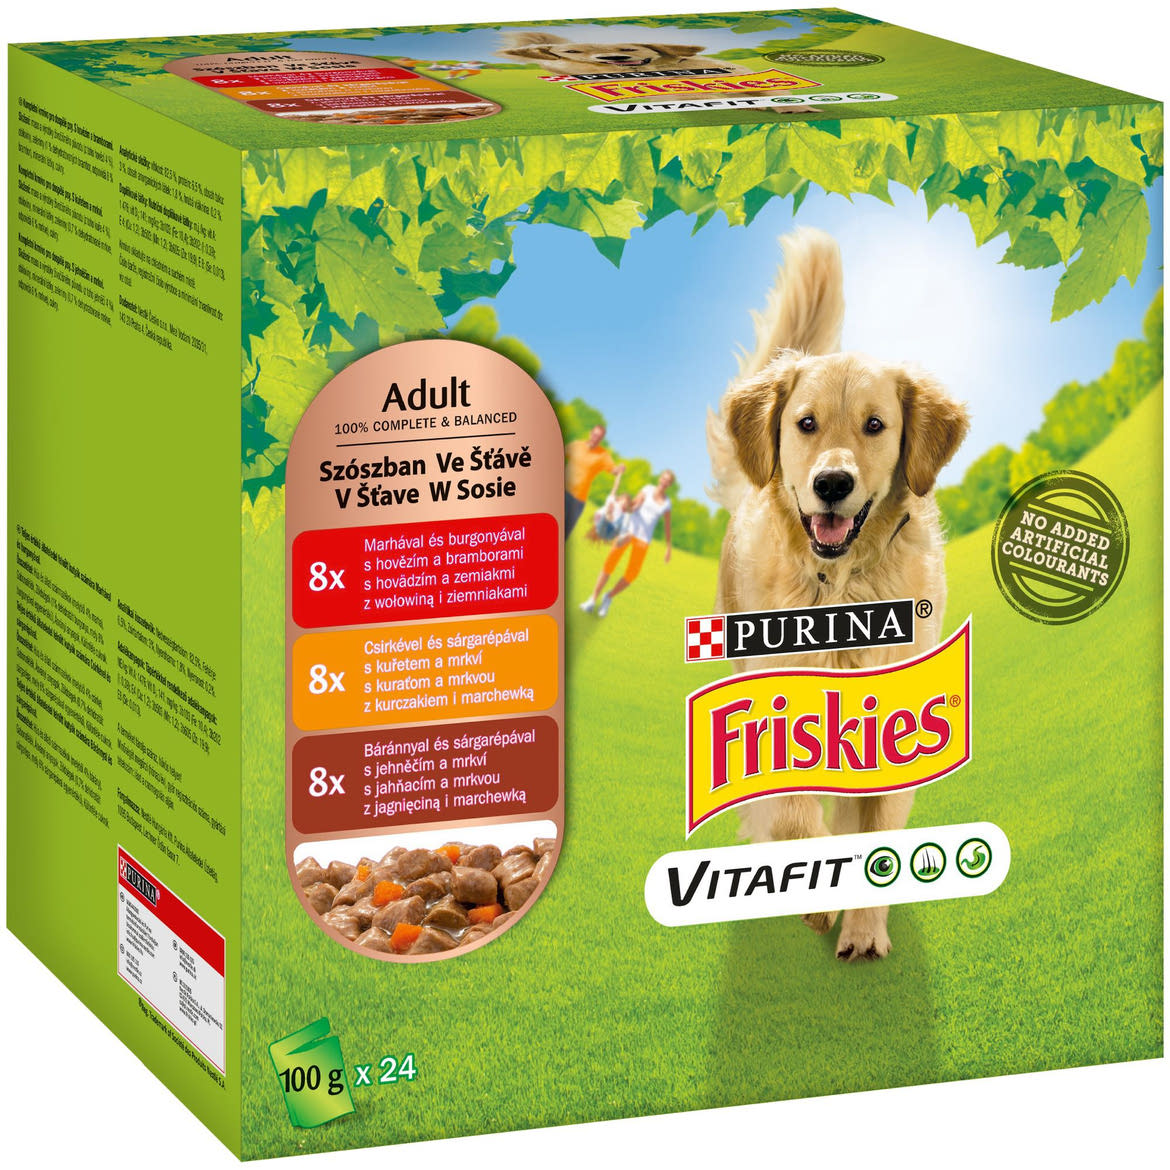 Friskies Vitafit kutya tasak MP marha&csirke&bárány 24x100g